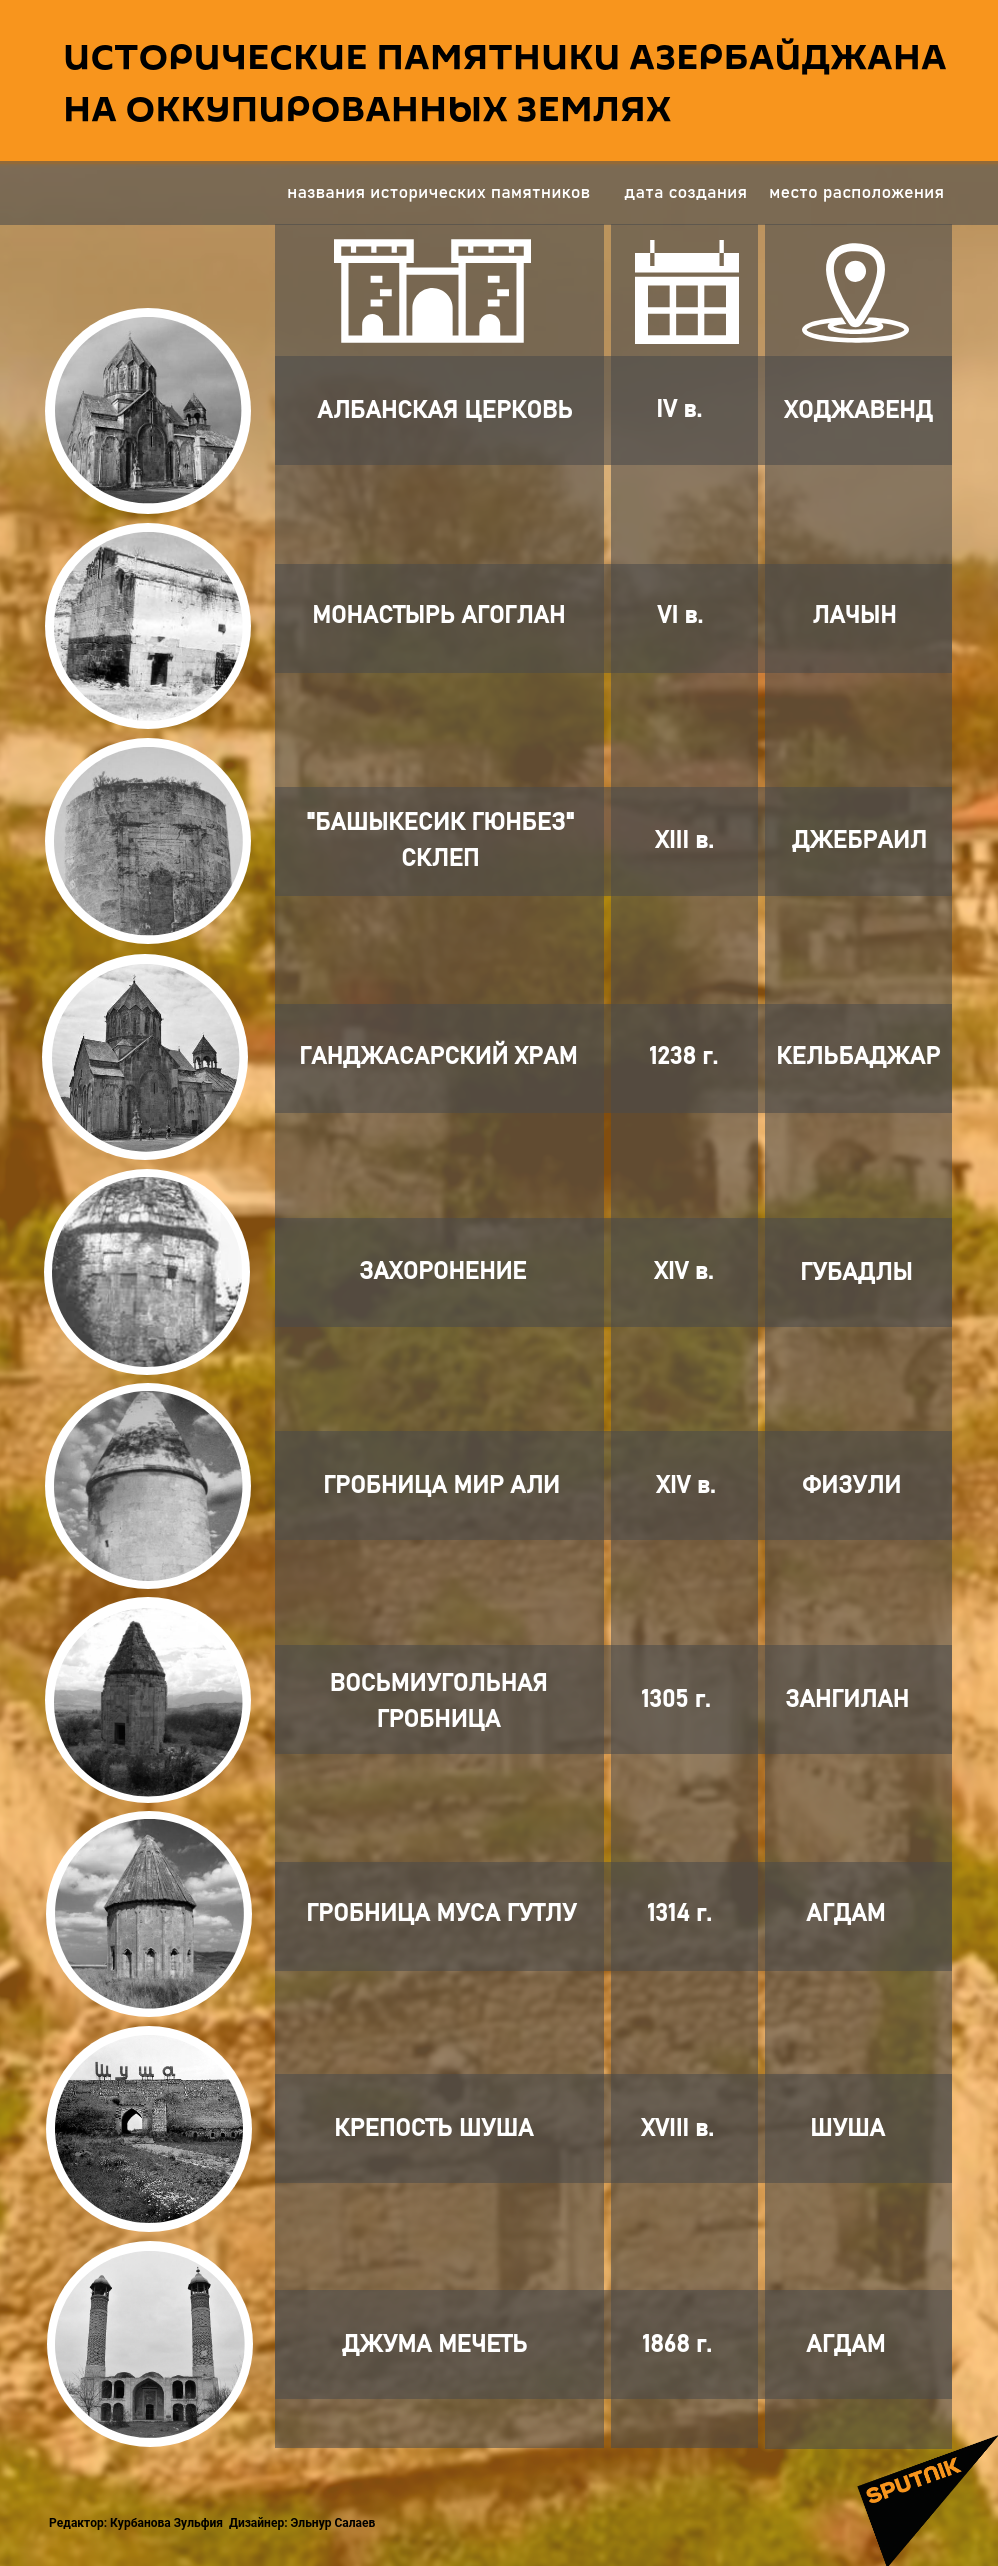 Инфографика: ИСТОРИЧЕСКИЕ ПАМЯТНИКИ АЗЕРБАЙДЖАНА НА ОККУПИРОВАННЫХ ЗЕМЛЯХ - Sputnik Азербайджан